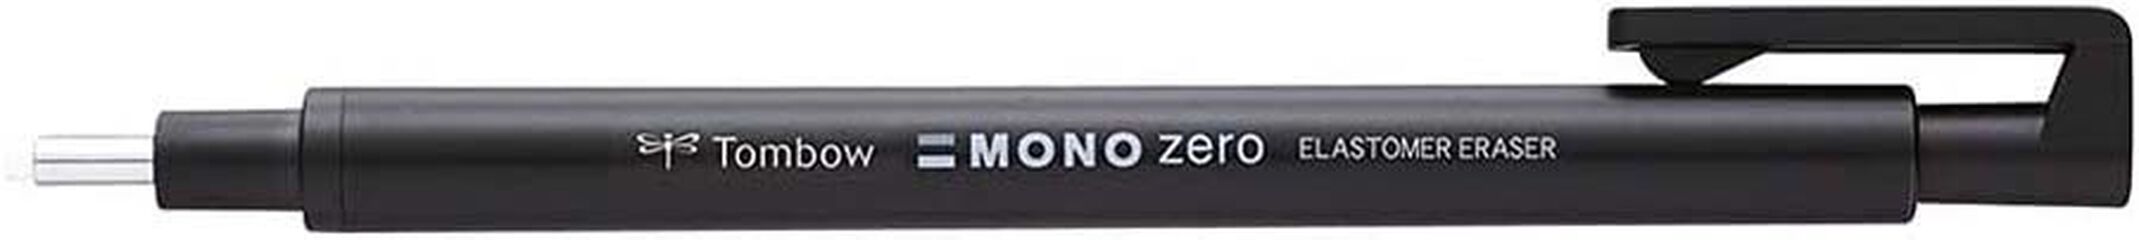 Portagomas Tombow Mono Zero negro